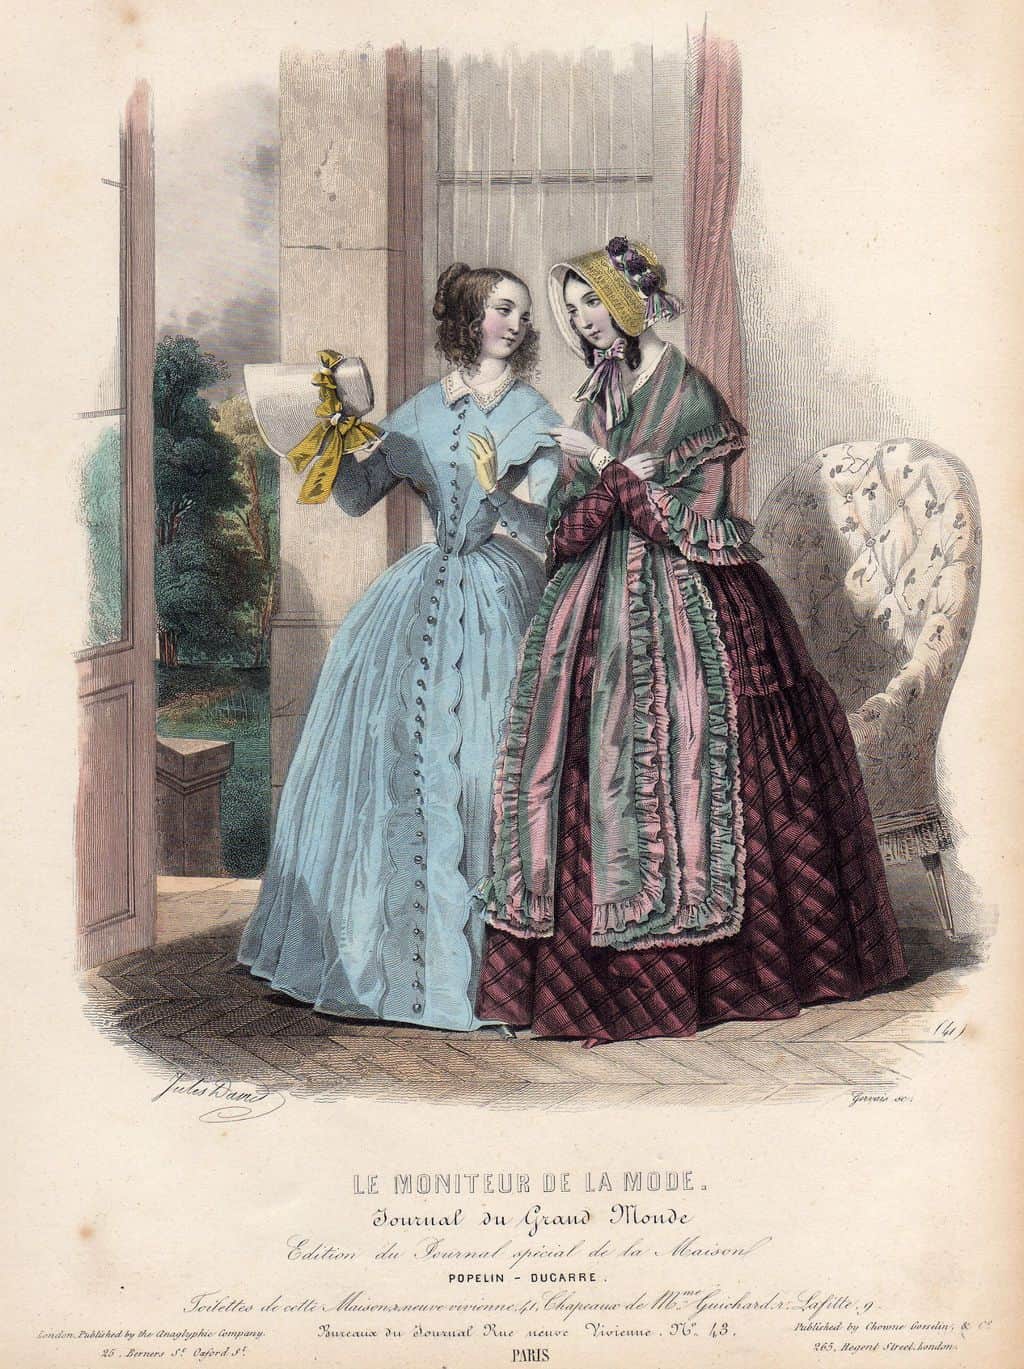 Le Moniteur de la Mode, 1843